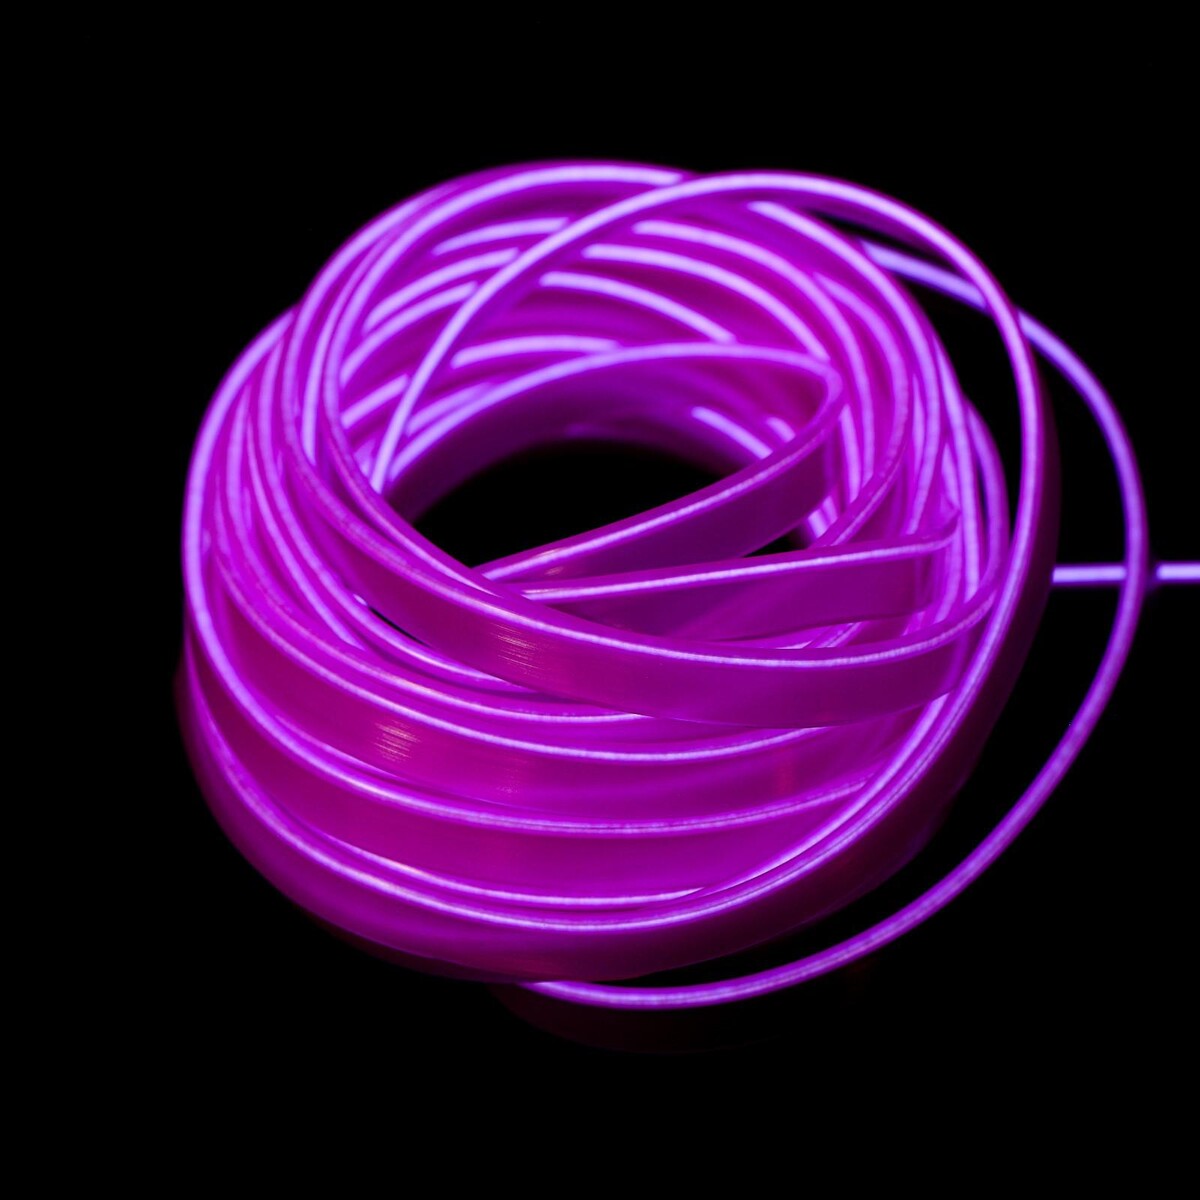 Неоновая нить cartage для подсветки салона, адаптер питания 12 в, 7 м, фиолетовый мини вентилятор в форме наручных часов lof 09 3 скорости подсветка фиолетовый